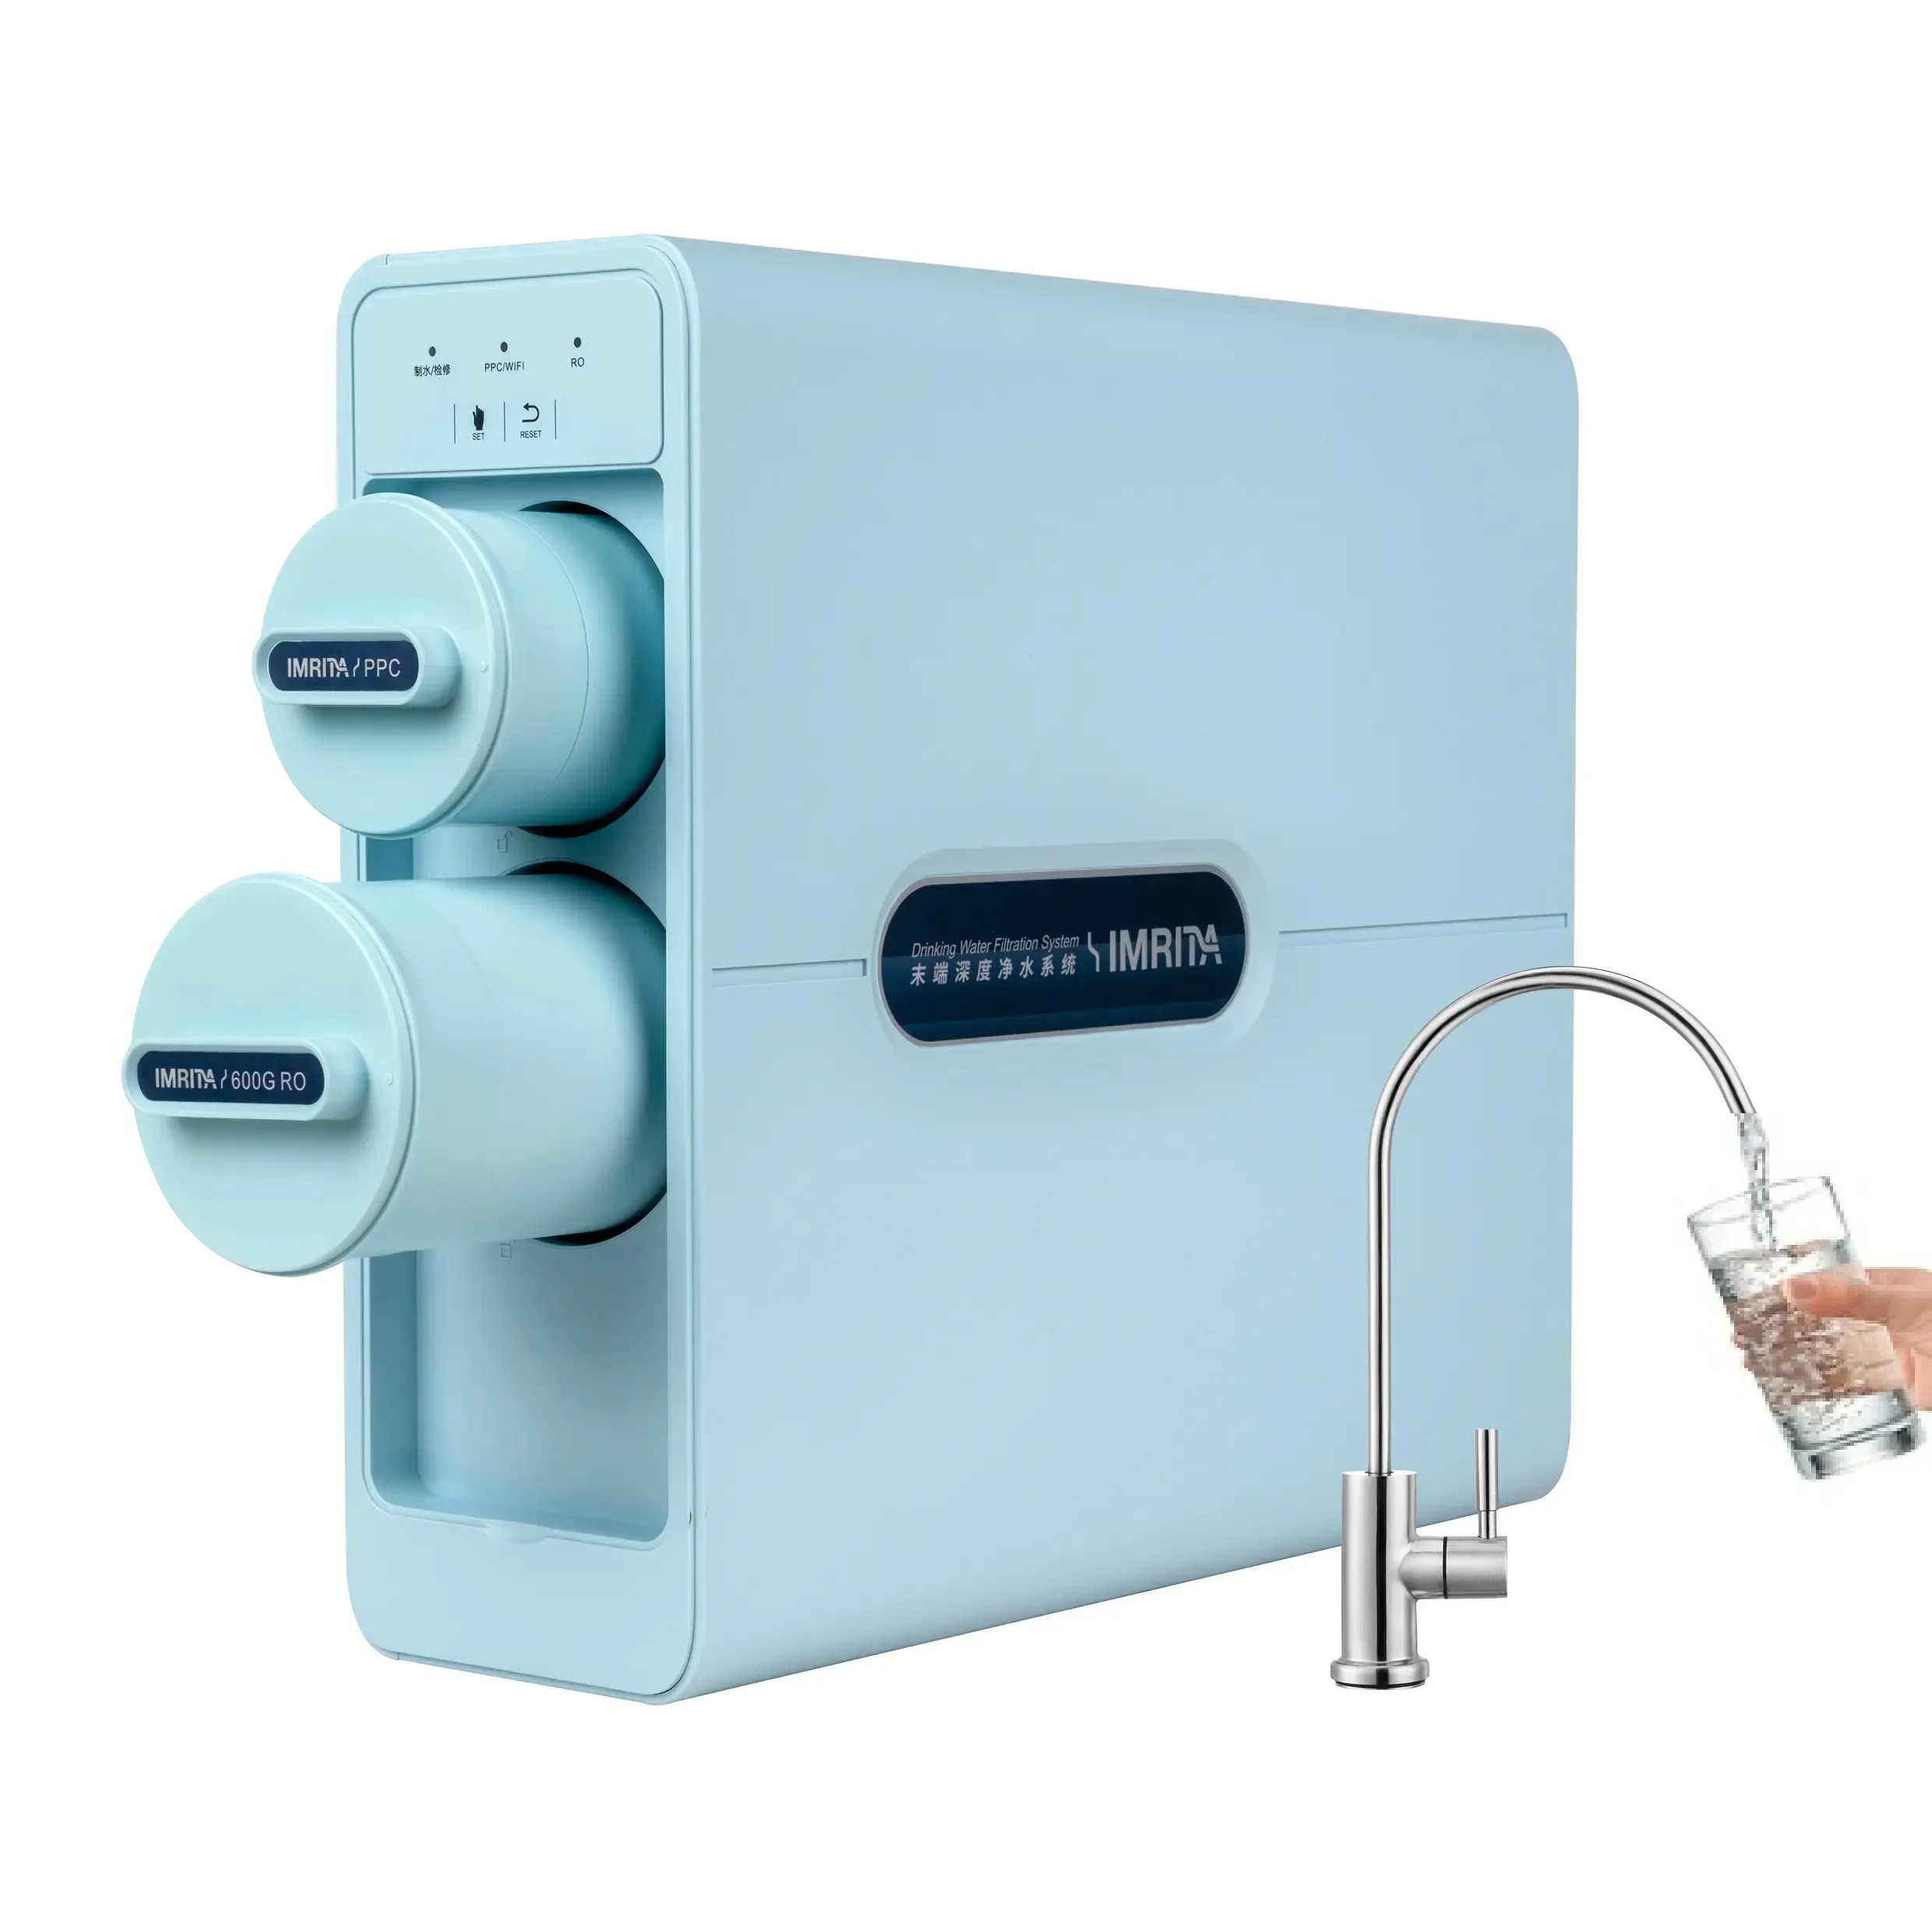 نظام تصفية المياه للمنزل بالكامل من IMRITA تحت الحوض مع تصفية مياه منقي 800GDP بالتناضح العكسي مع تصفية بدون خزان